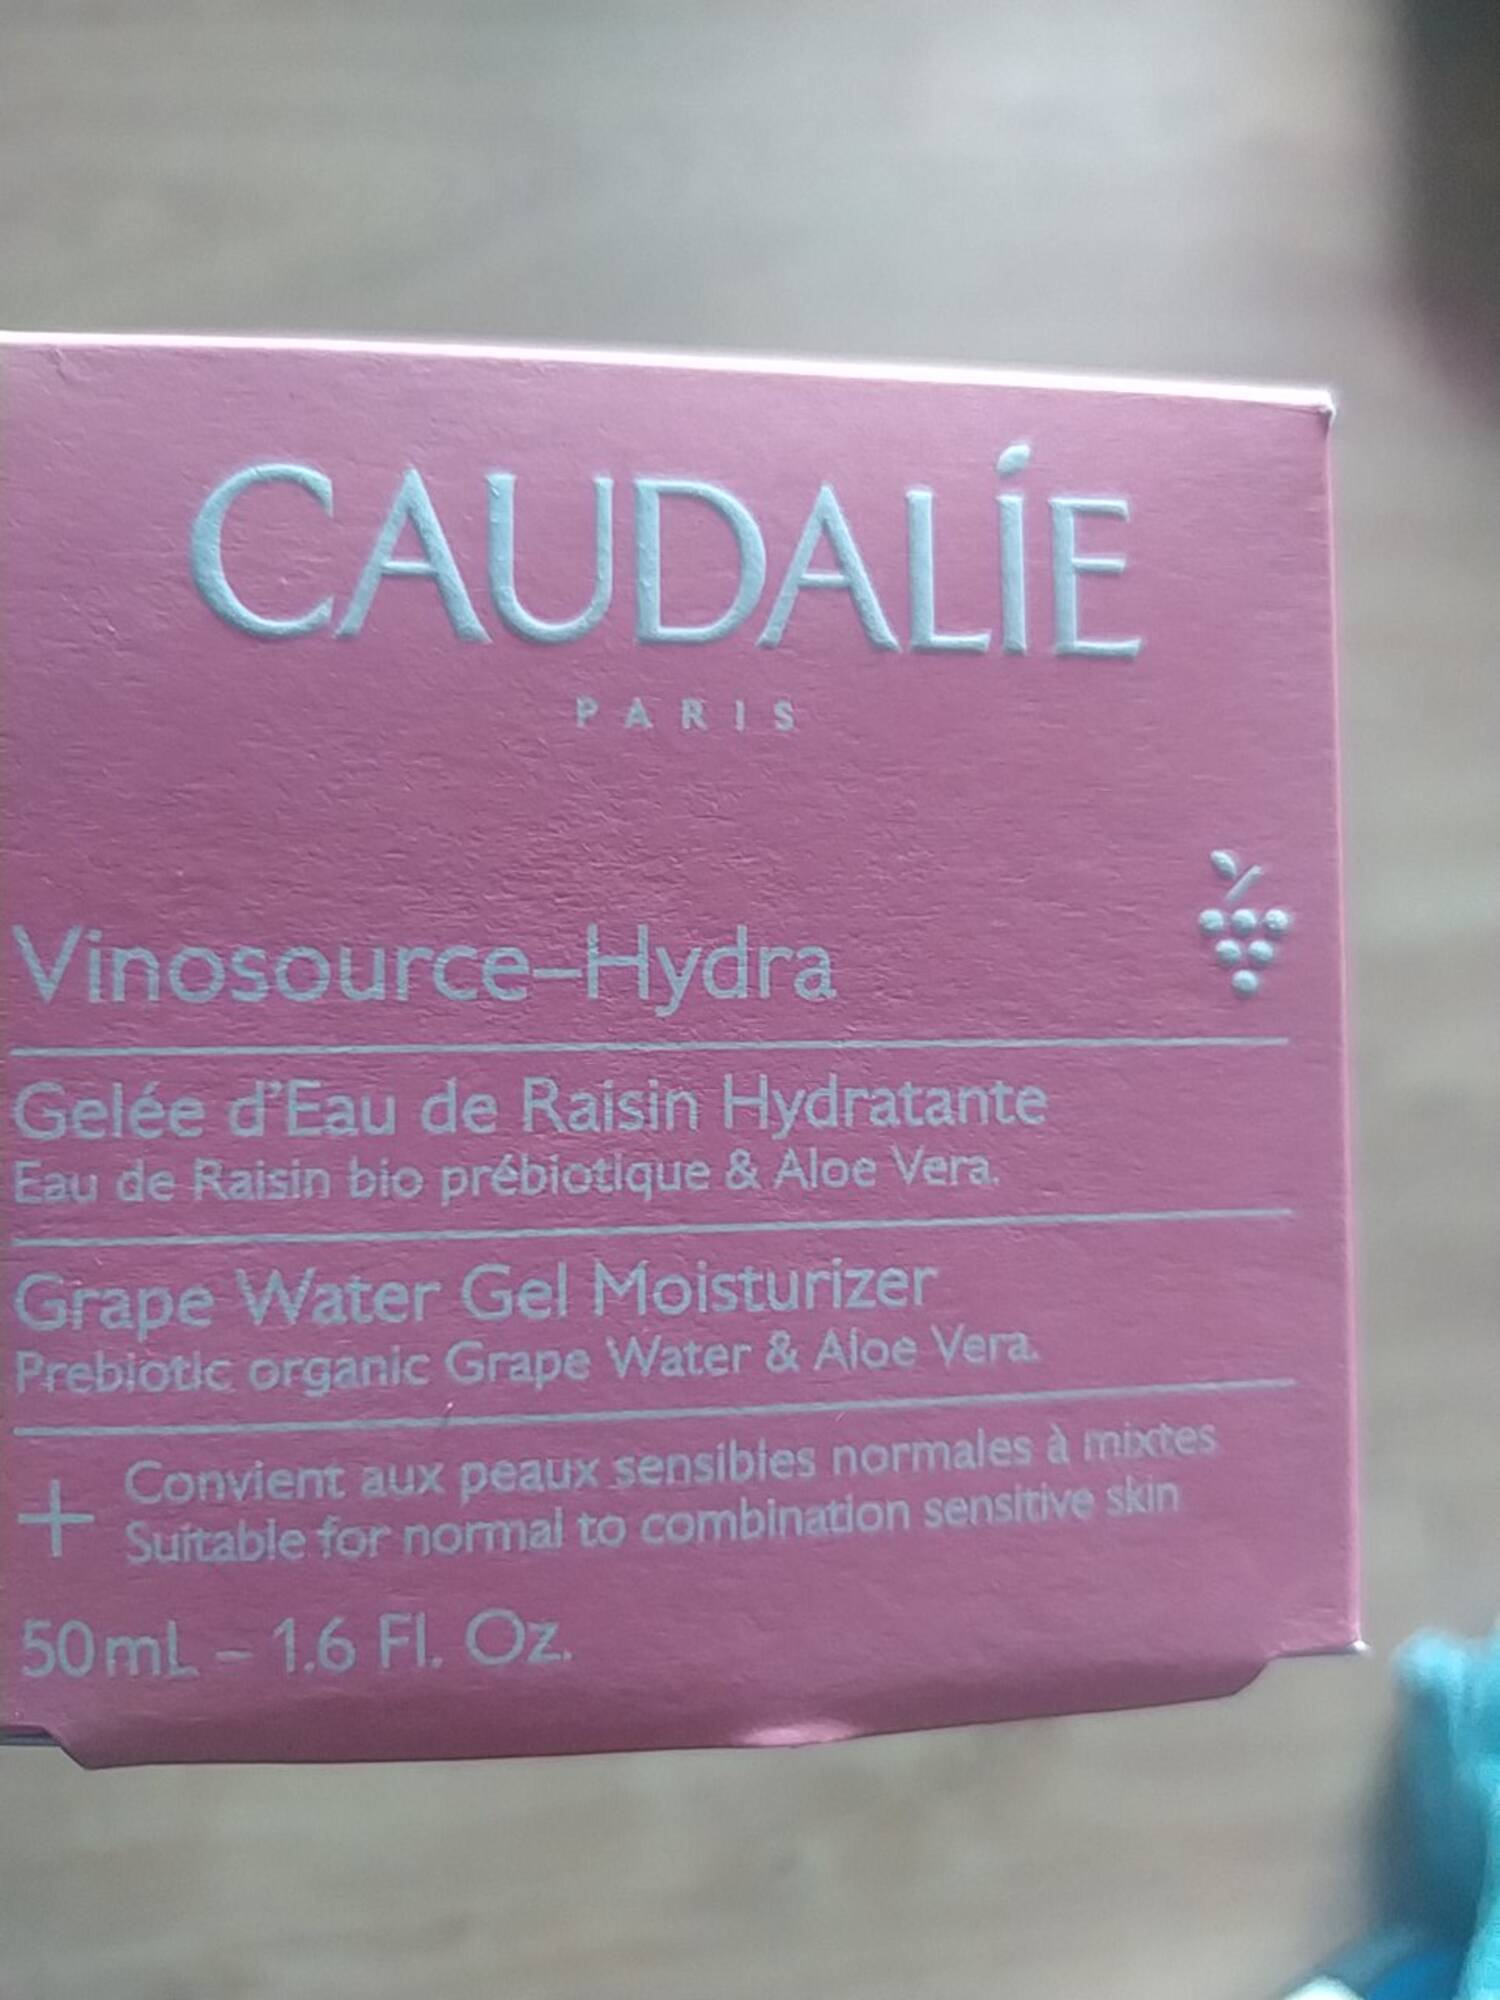 CAUDALIE - Vinosource-Hydra - Gelée d'eau de raisin hydratante